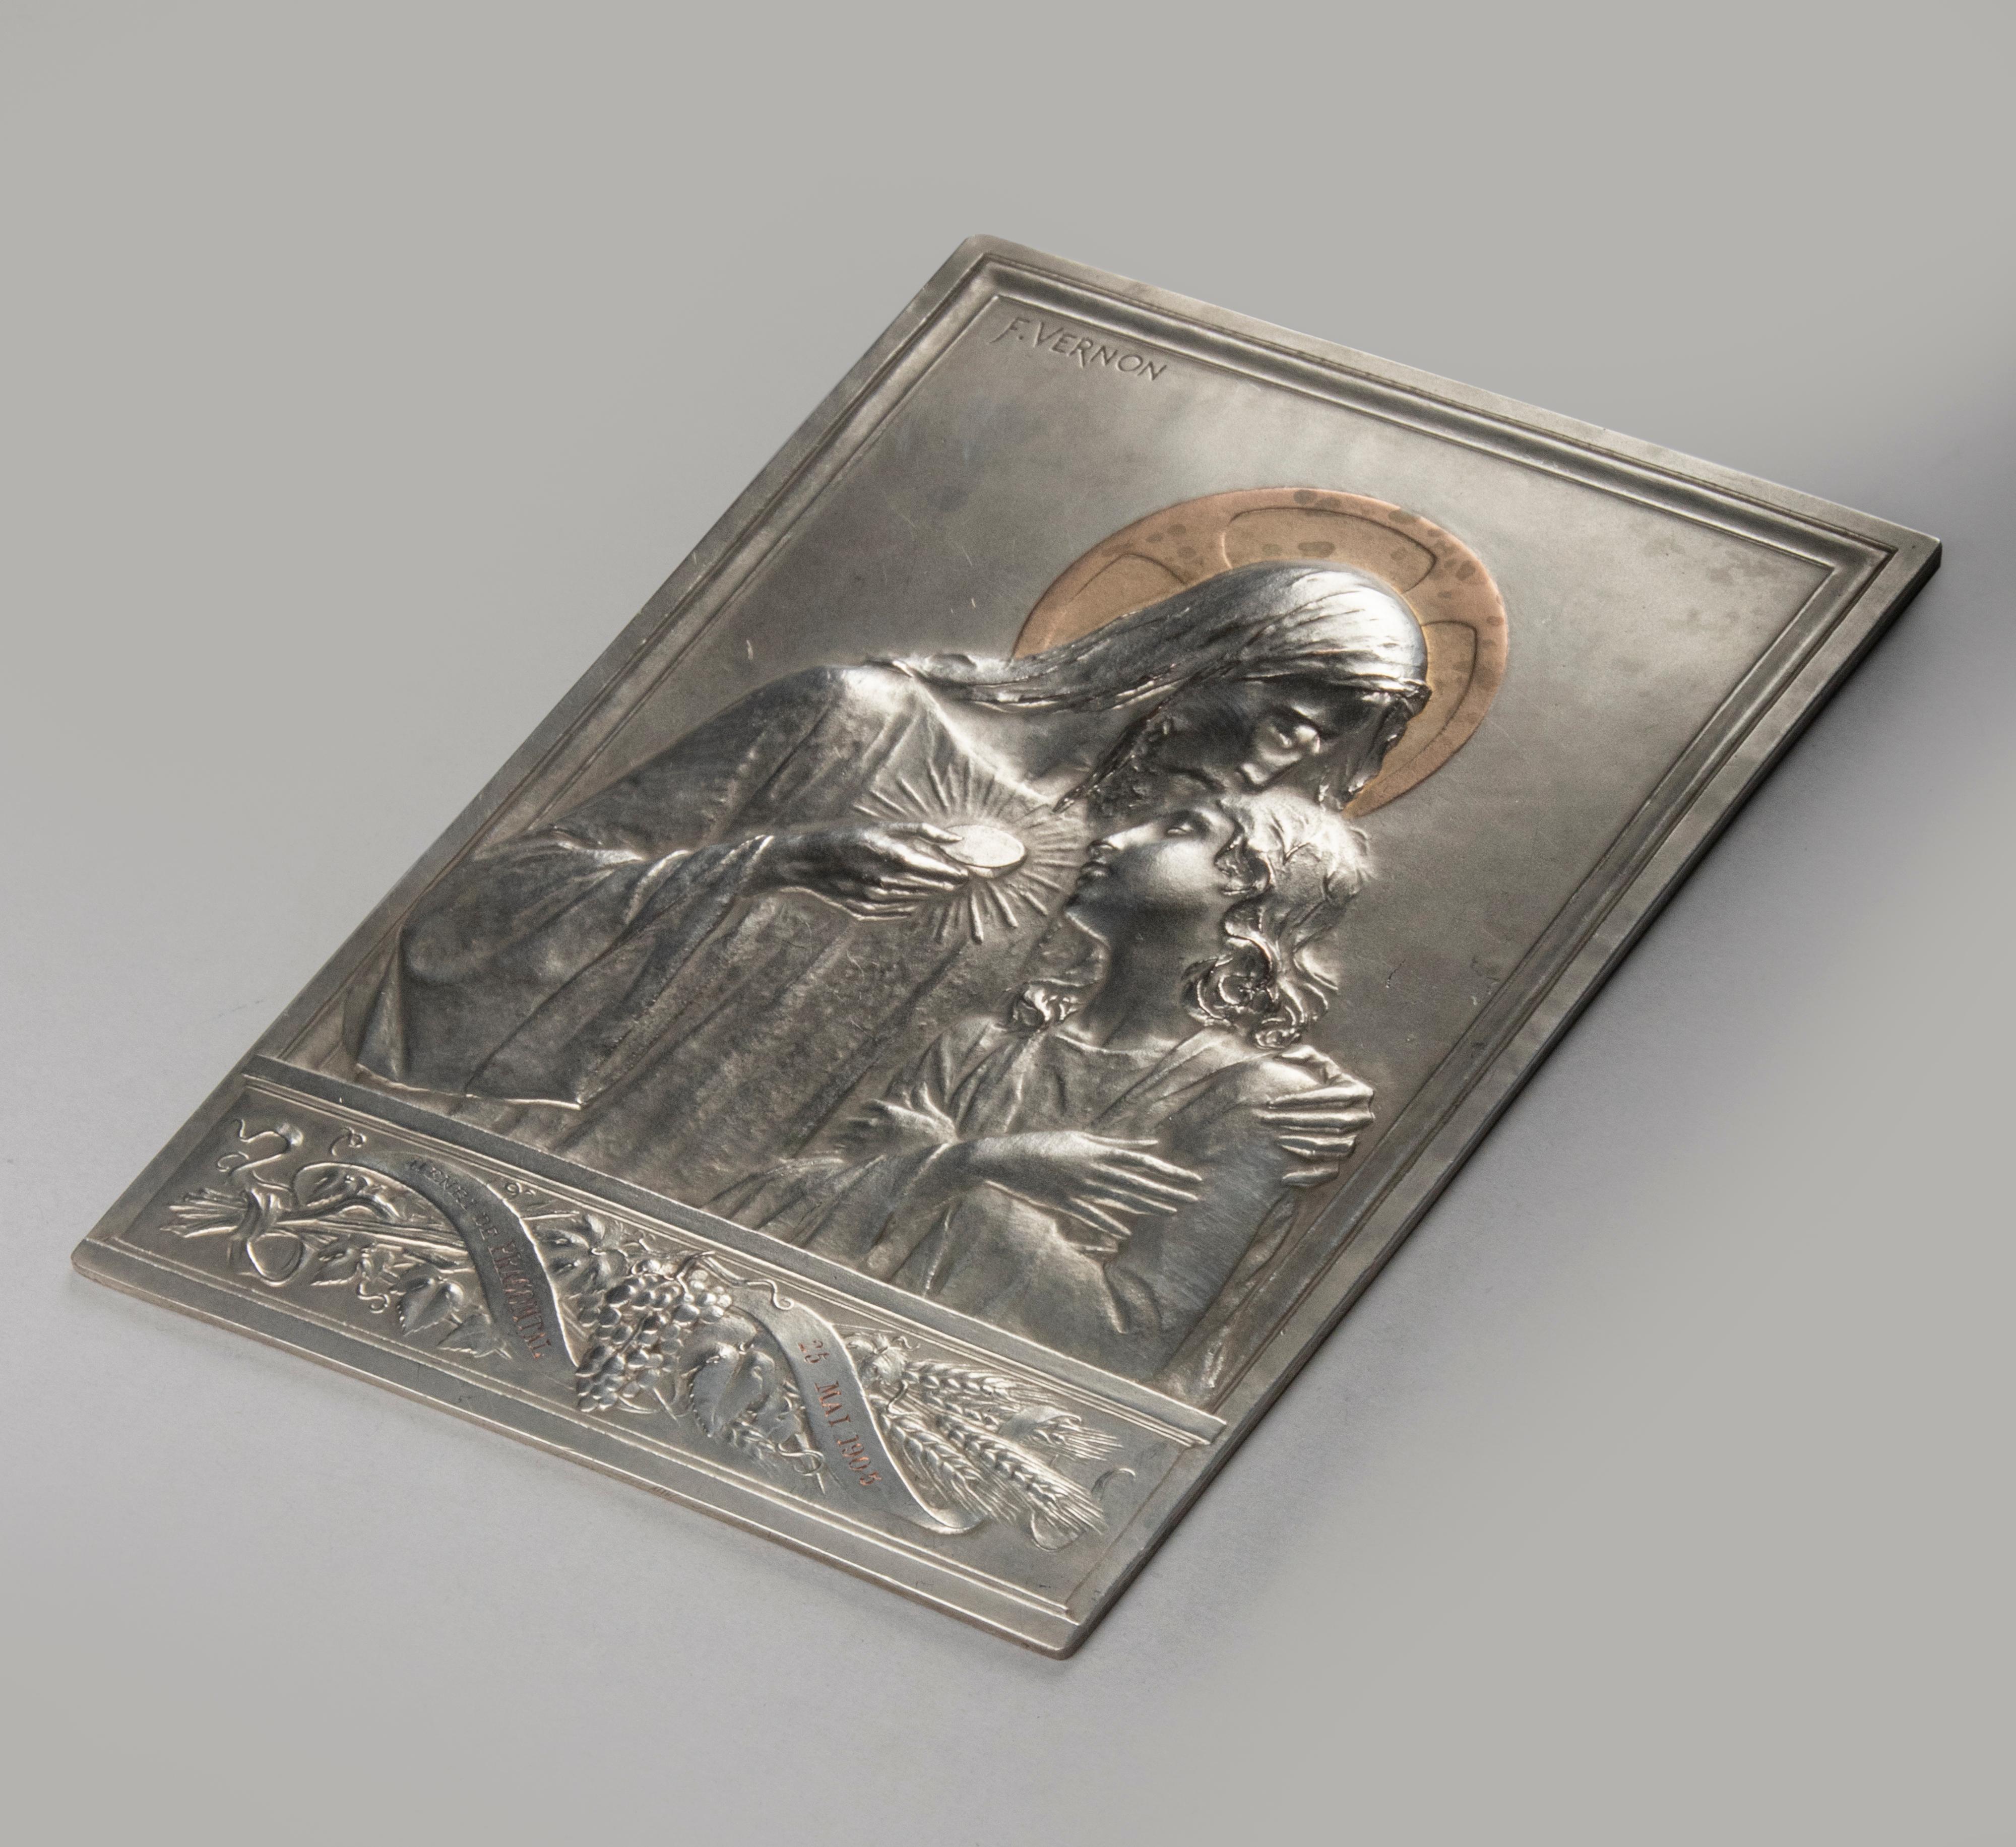 Belle plaque ancienne avec une image de Jésus-Christ avec un enfant. La plaque est magnifiquement décorée, avec des détails fins et une belle gravure. La plaque est signée 